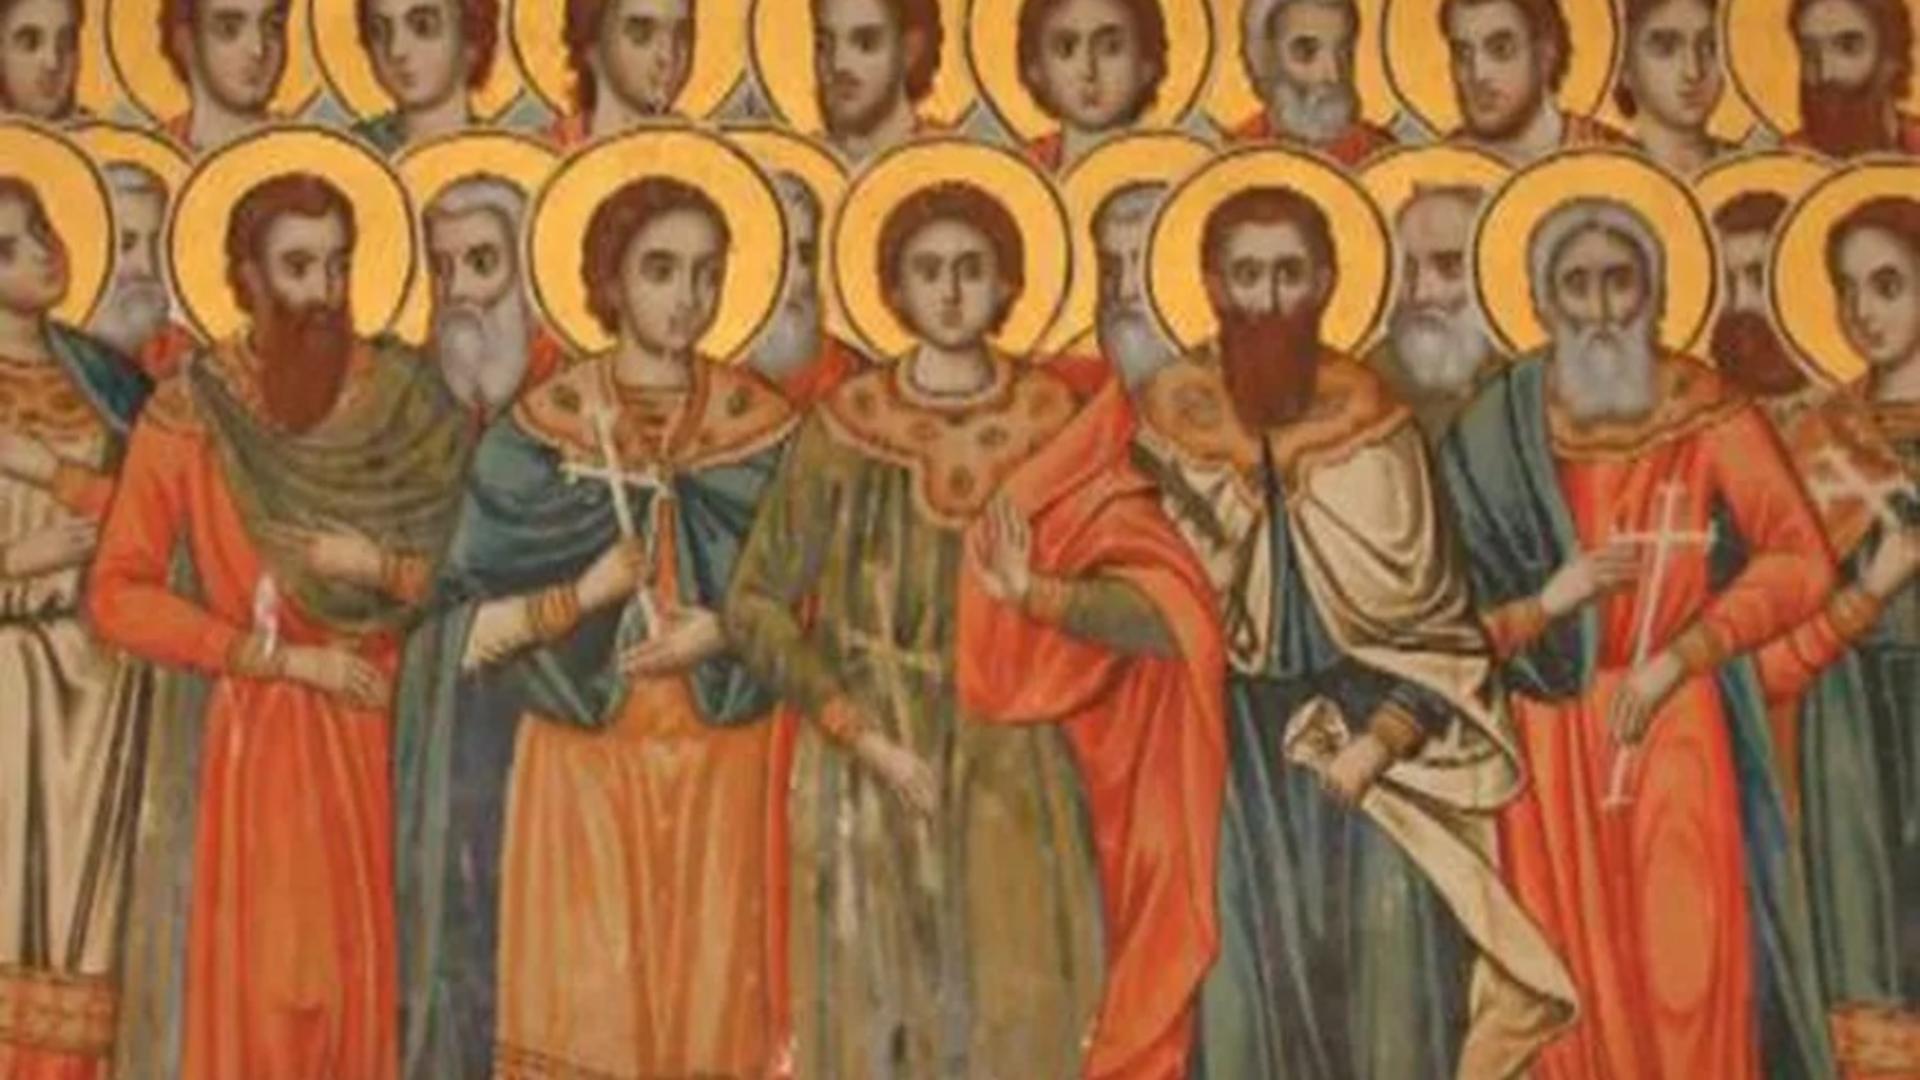 Sfinţii 10 Mucenici sunt pomeniţi în calendarul creştin ortodox în ziua de 23 decembrie